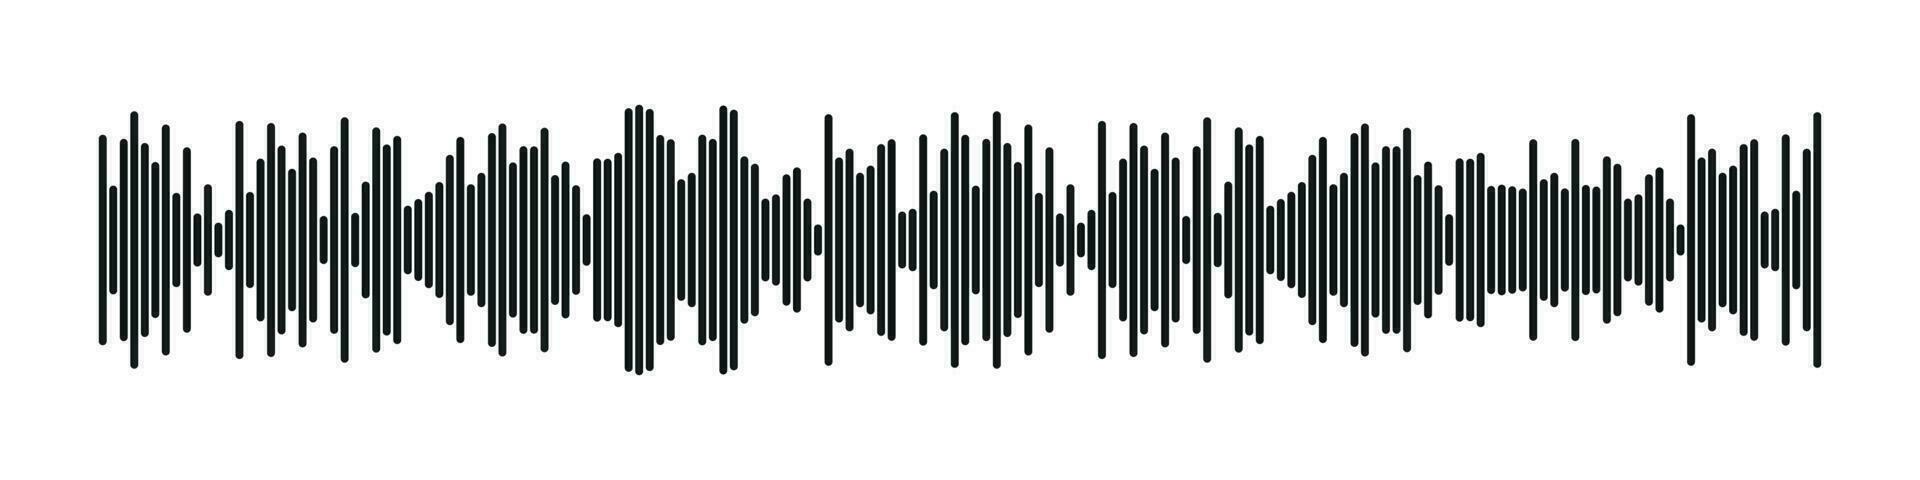 Klang Radio form. abstrakt Musik- Audio- Schallwelle. Vektor isoliert Illustration